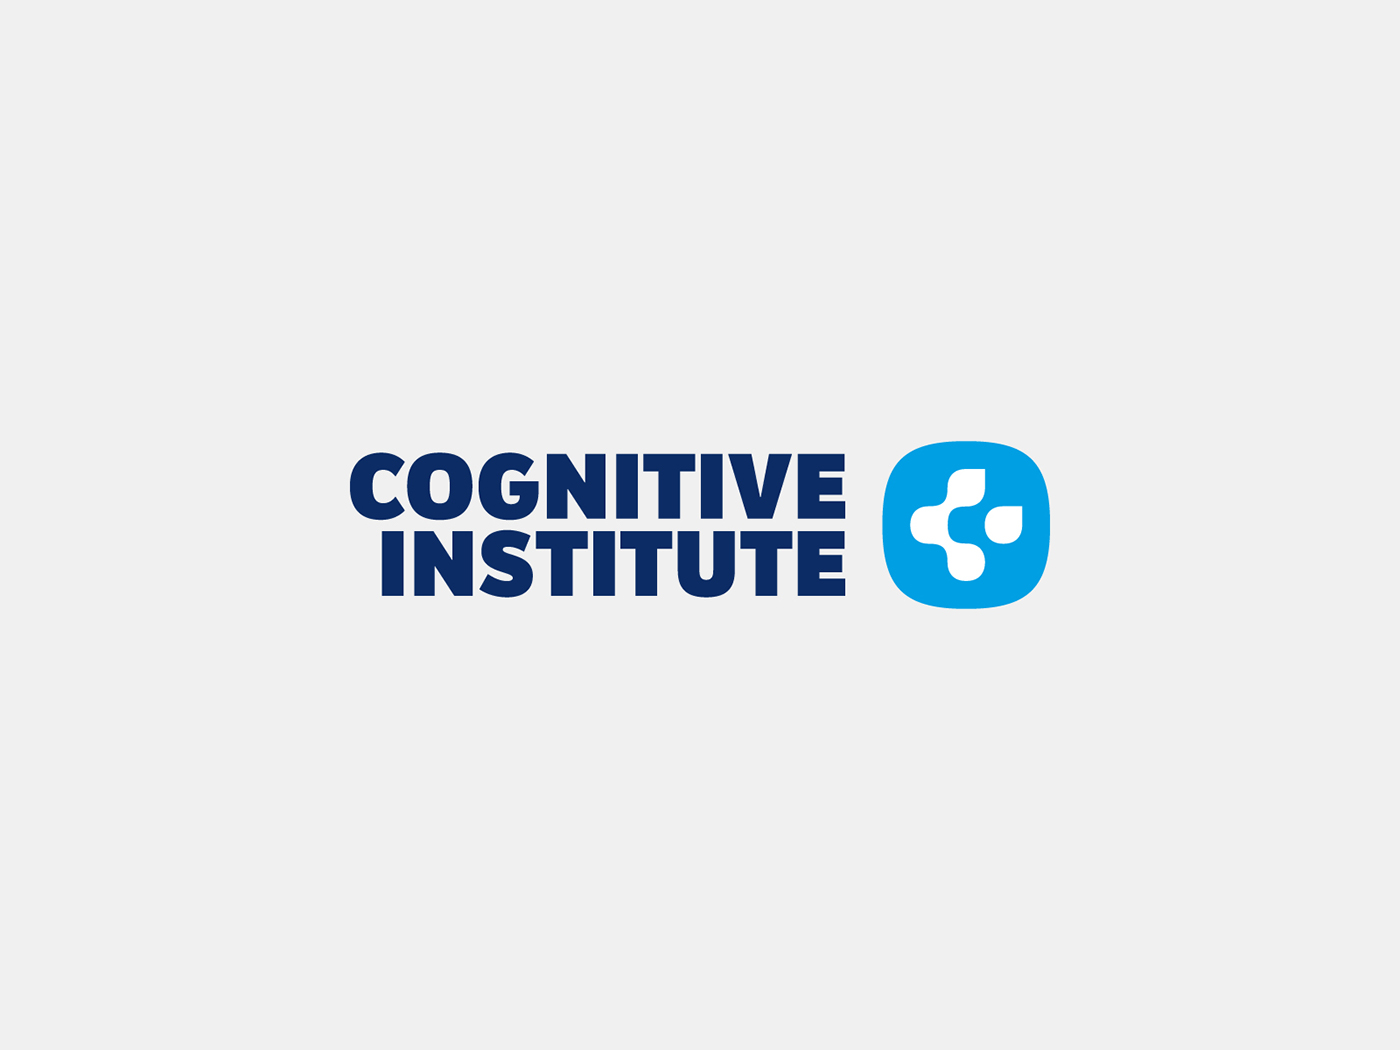 logo symbol branding  cognitive institute Icon corporate editorial